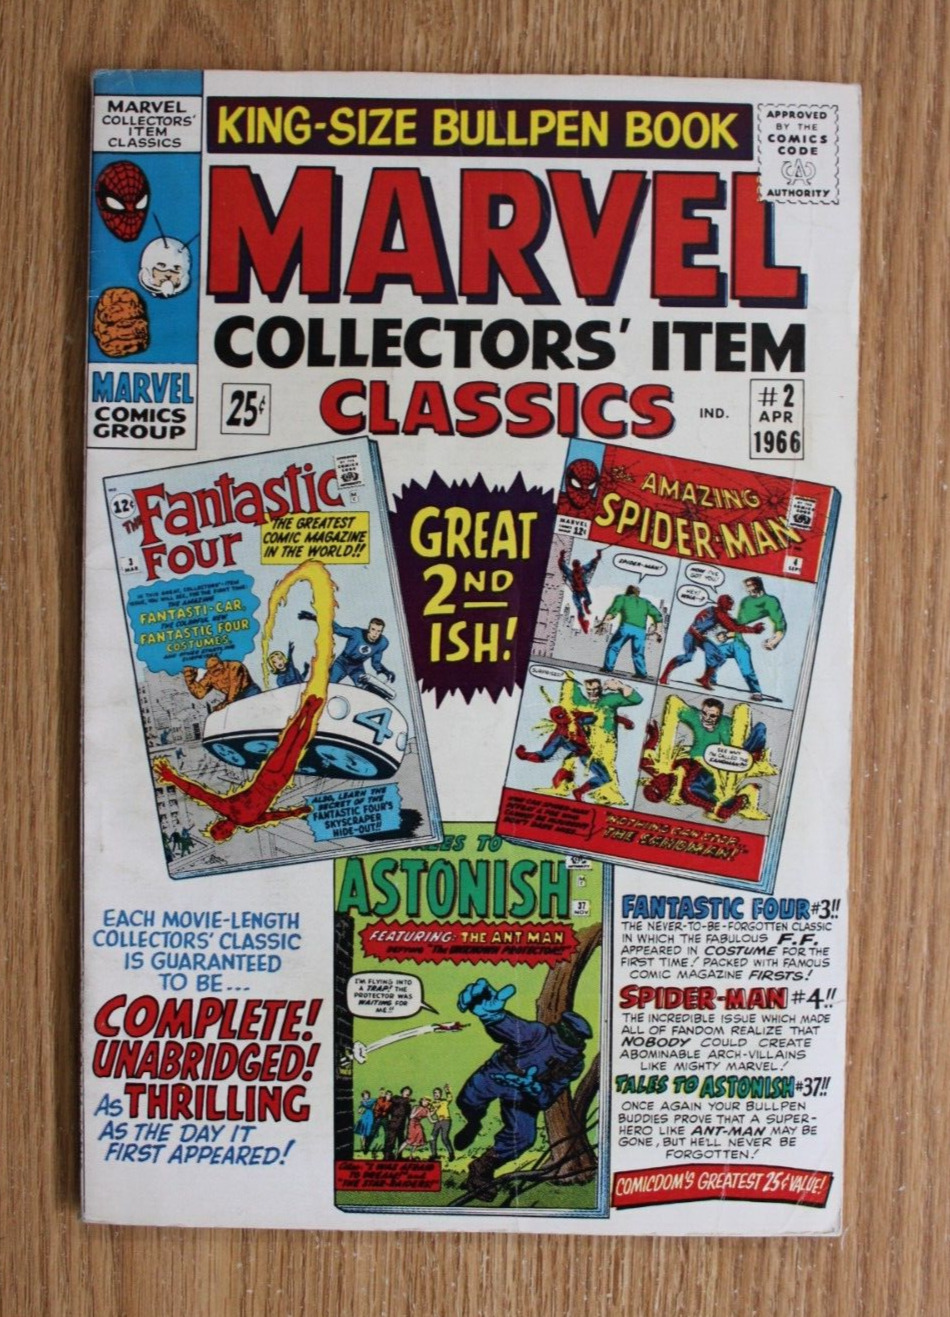 Marvel Collectors Item Classics #2 (1966) VG+